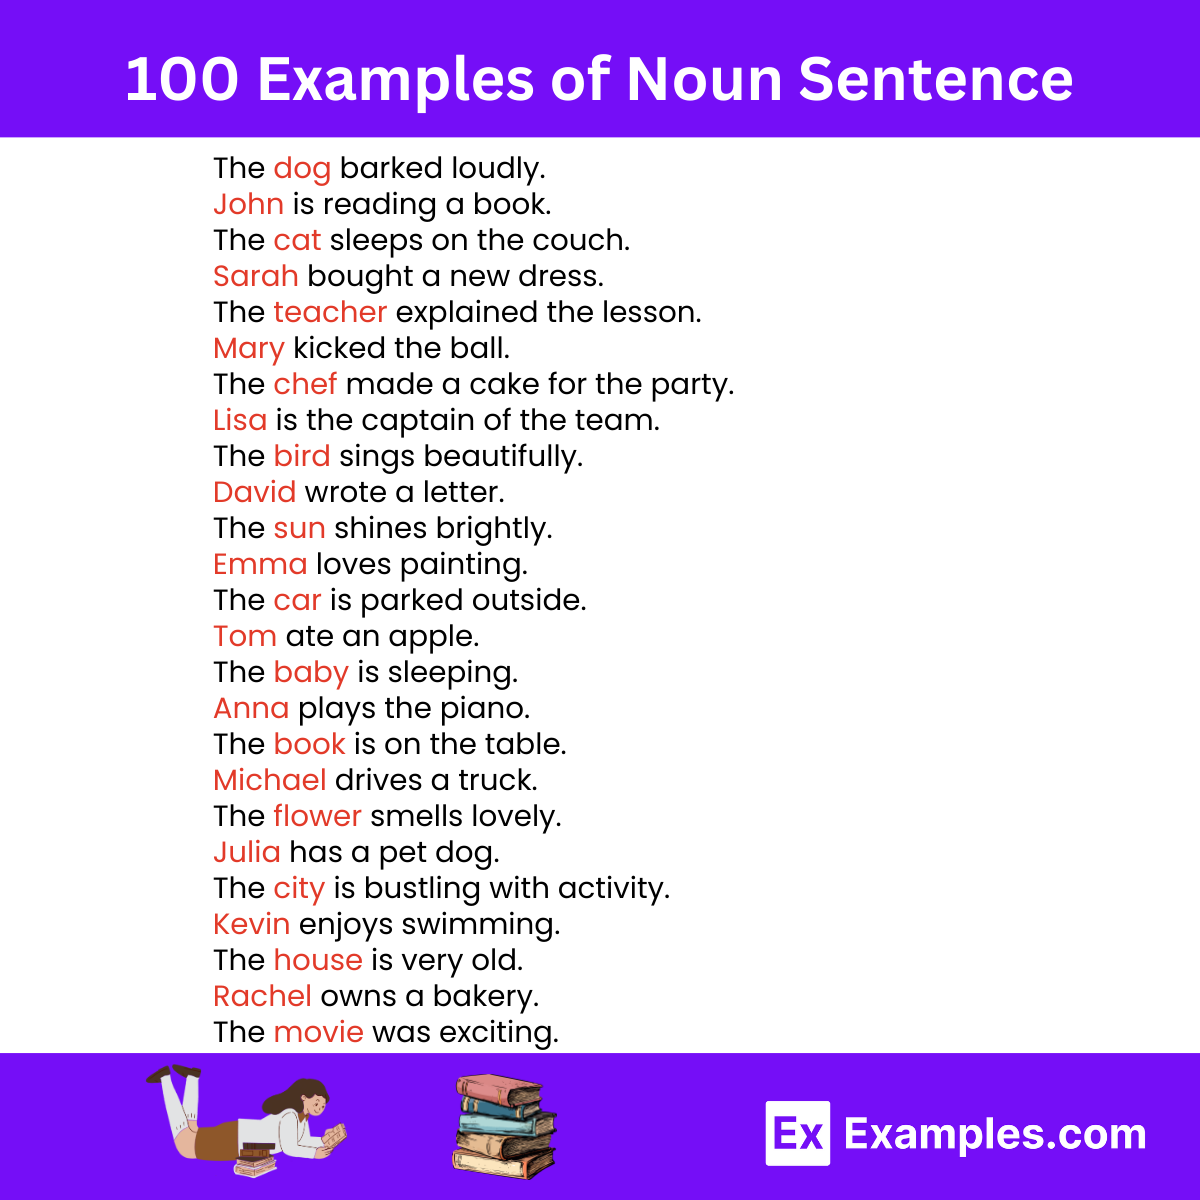 100 Examples of Noun Sentence